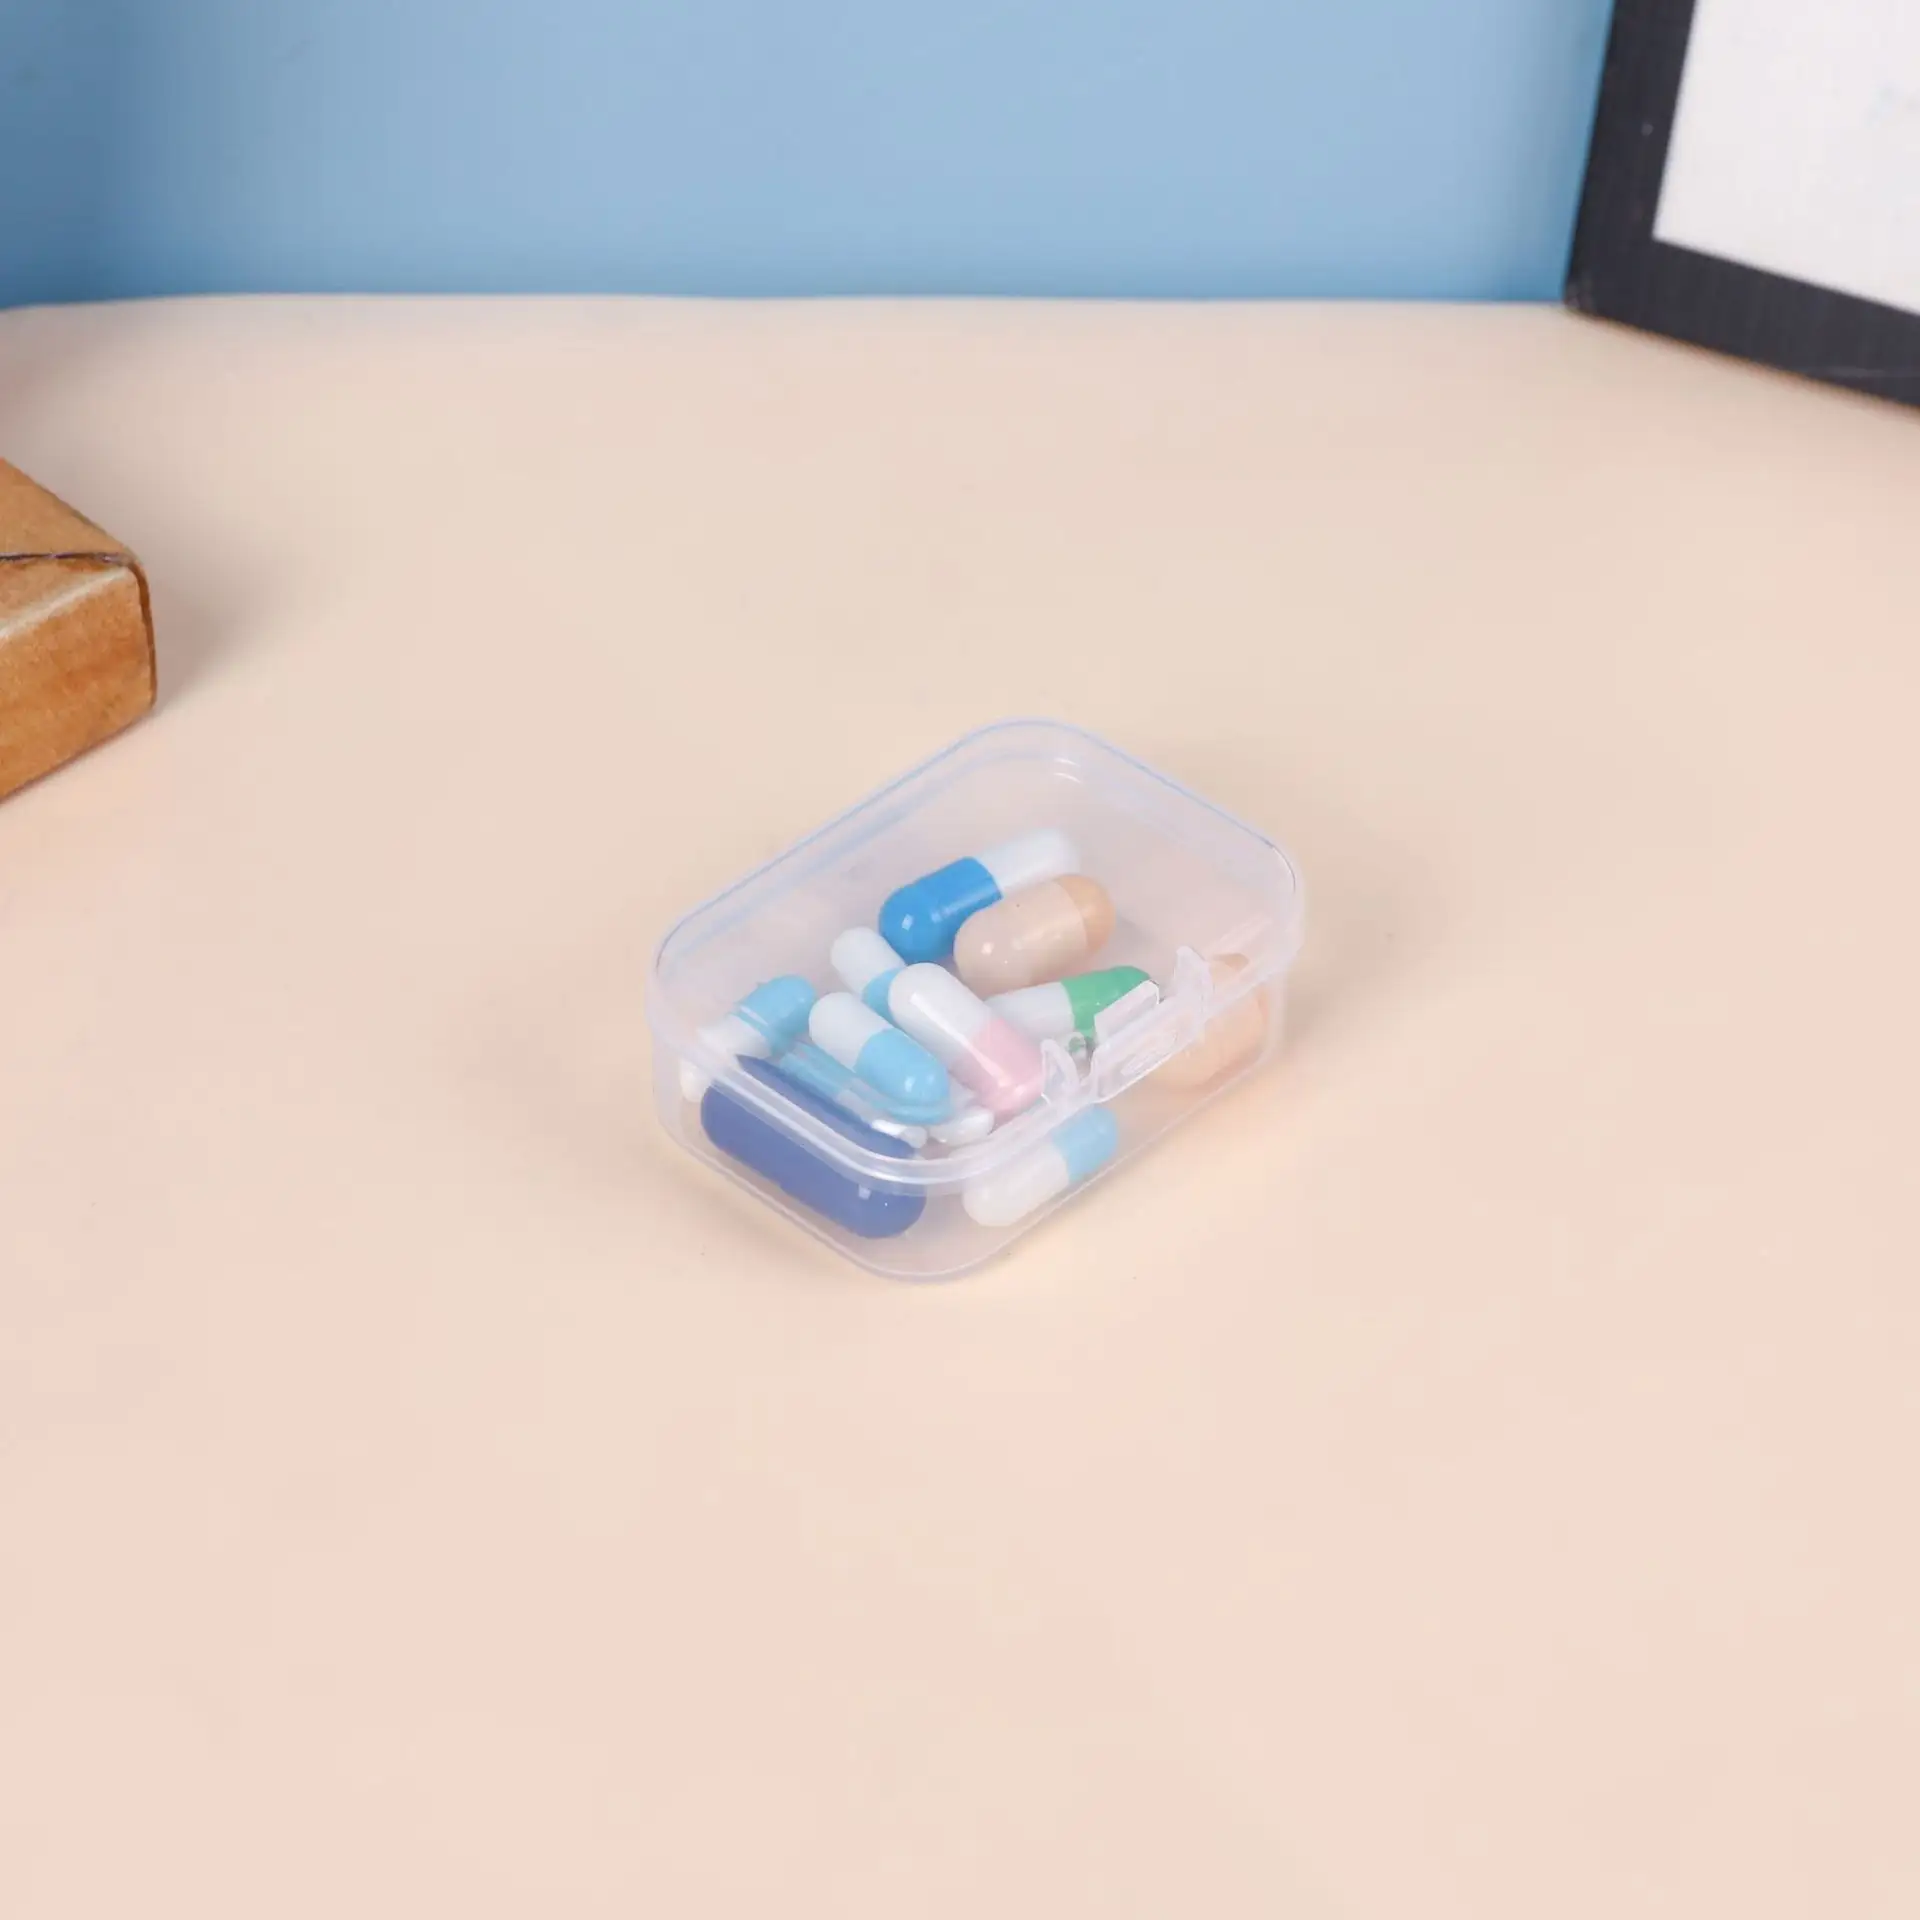 مصغرة 5.5 سنتيمتر مستطيلة صندوق بلاستيكي مع غطاء شفاف تخزين أجزاء اكسسوارات المواد الطب صندوق تخزين وتعبئة